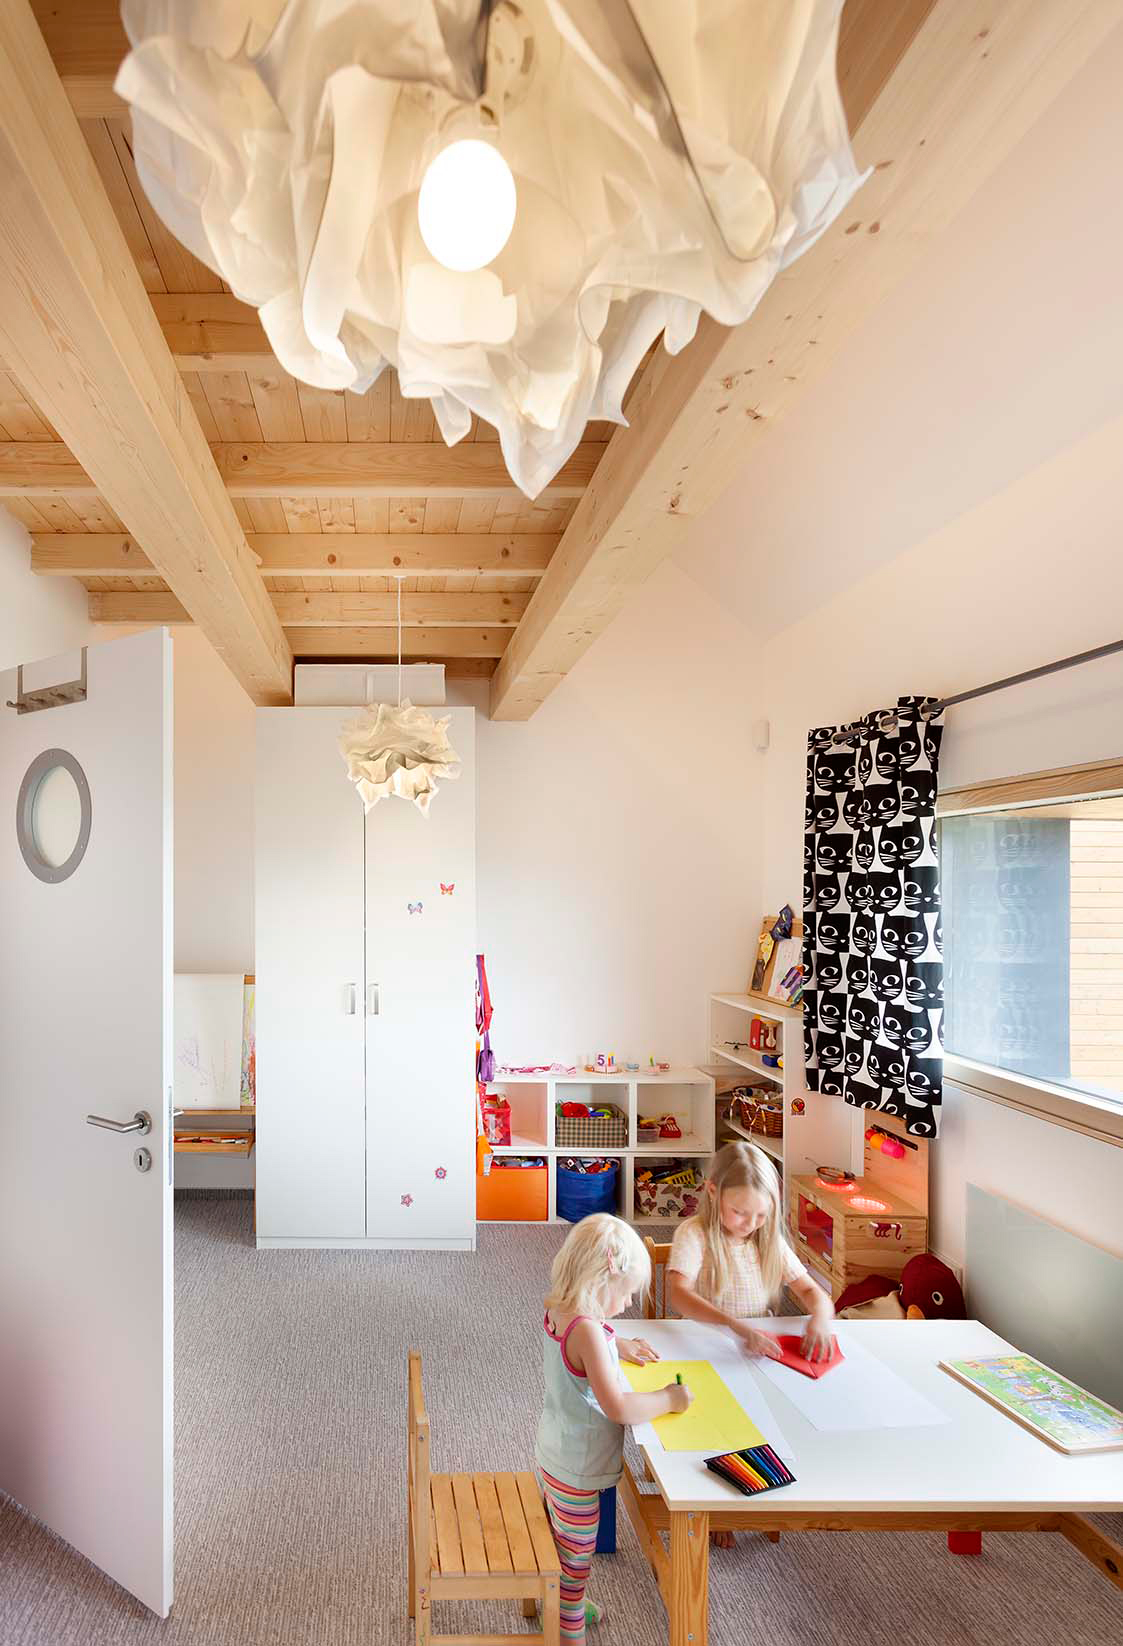 Detská izba je zatiaľ ako jedna miestnosť, ale priestor je už dopredu riešený tak, aby ho bolo možné neskôr rozdeliť na dve miestnosti.